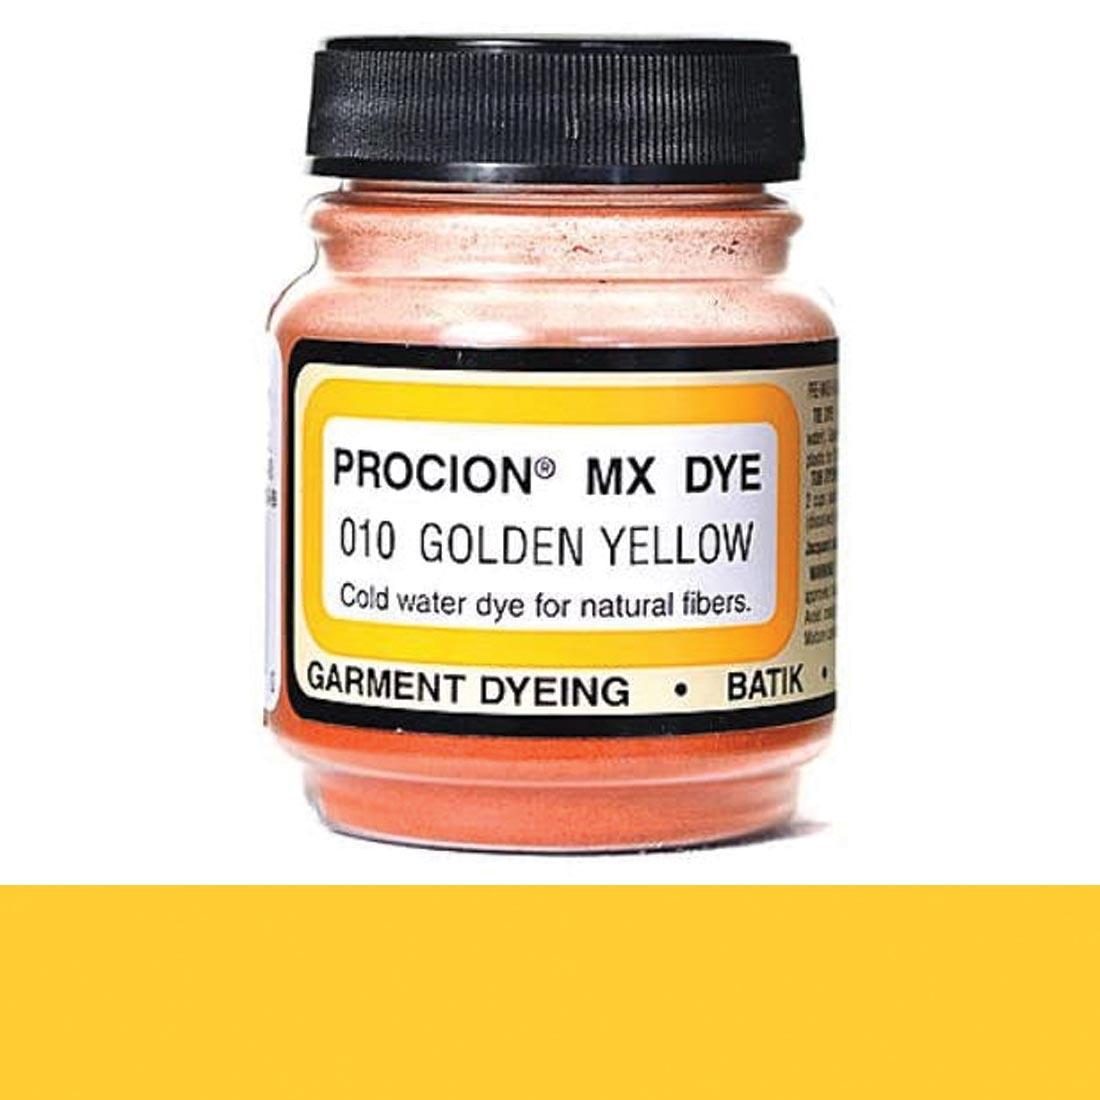 Jacquard Procion MX Dye Golden Yellow